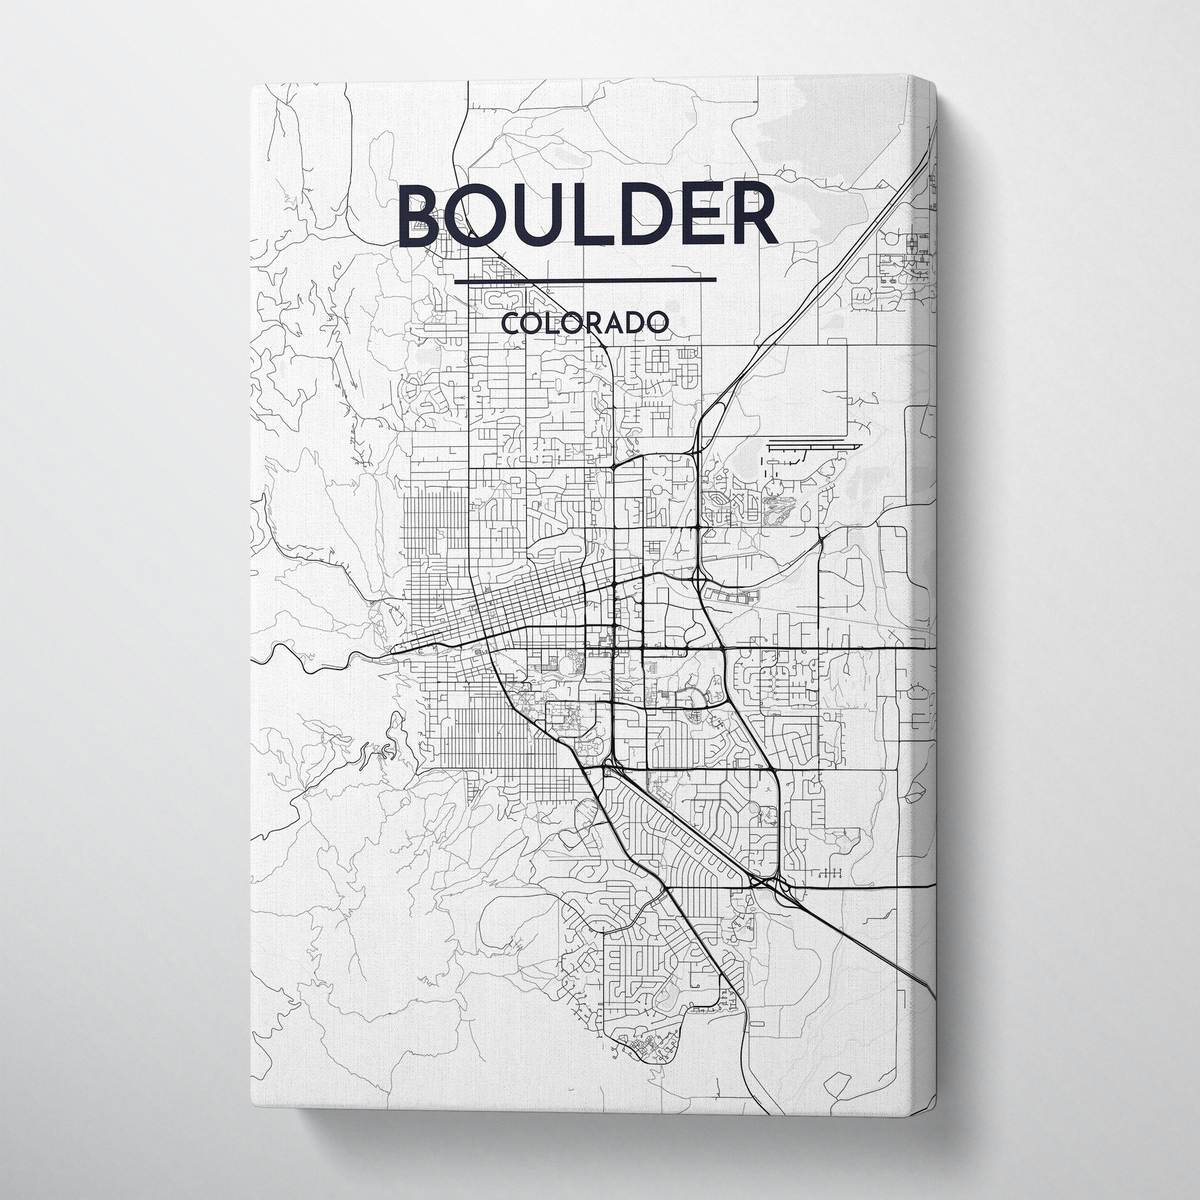 Boulder Map Canvas Wrap - Point Two Design